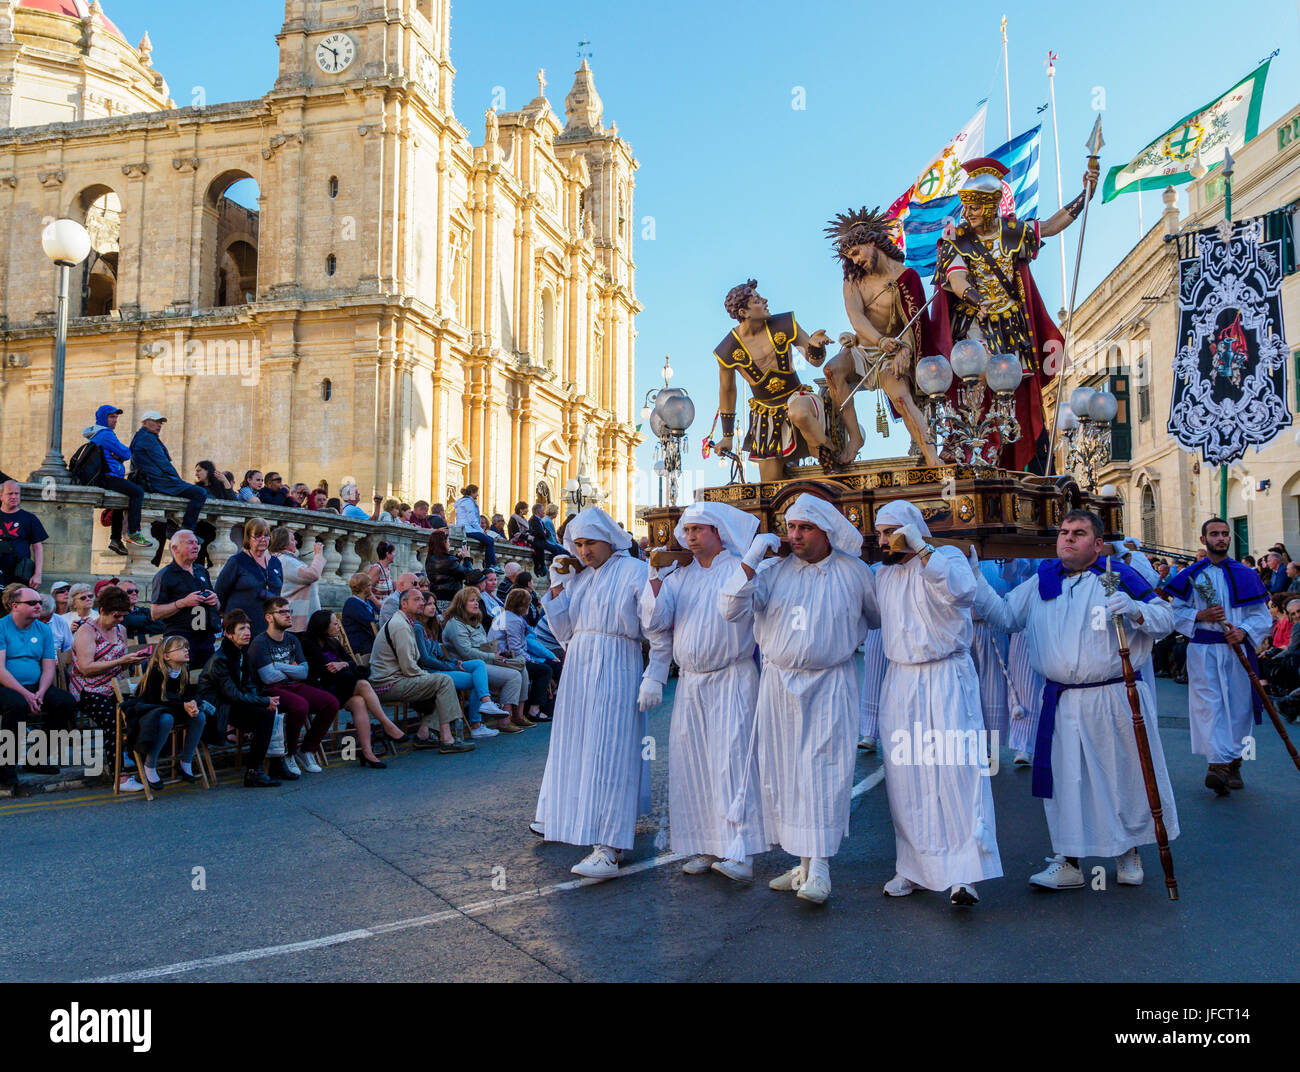 Los habitantes de la ciudad de Zejtun / Malta tuvo su tradicional procesión del Viernes santo / religioso iglesia desfilan delante de su iglesia Foto de stock